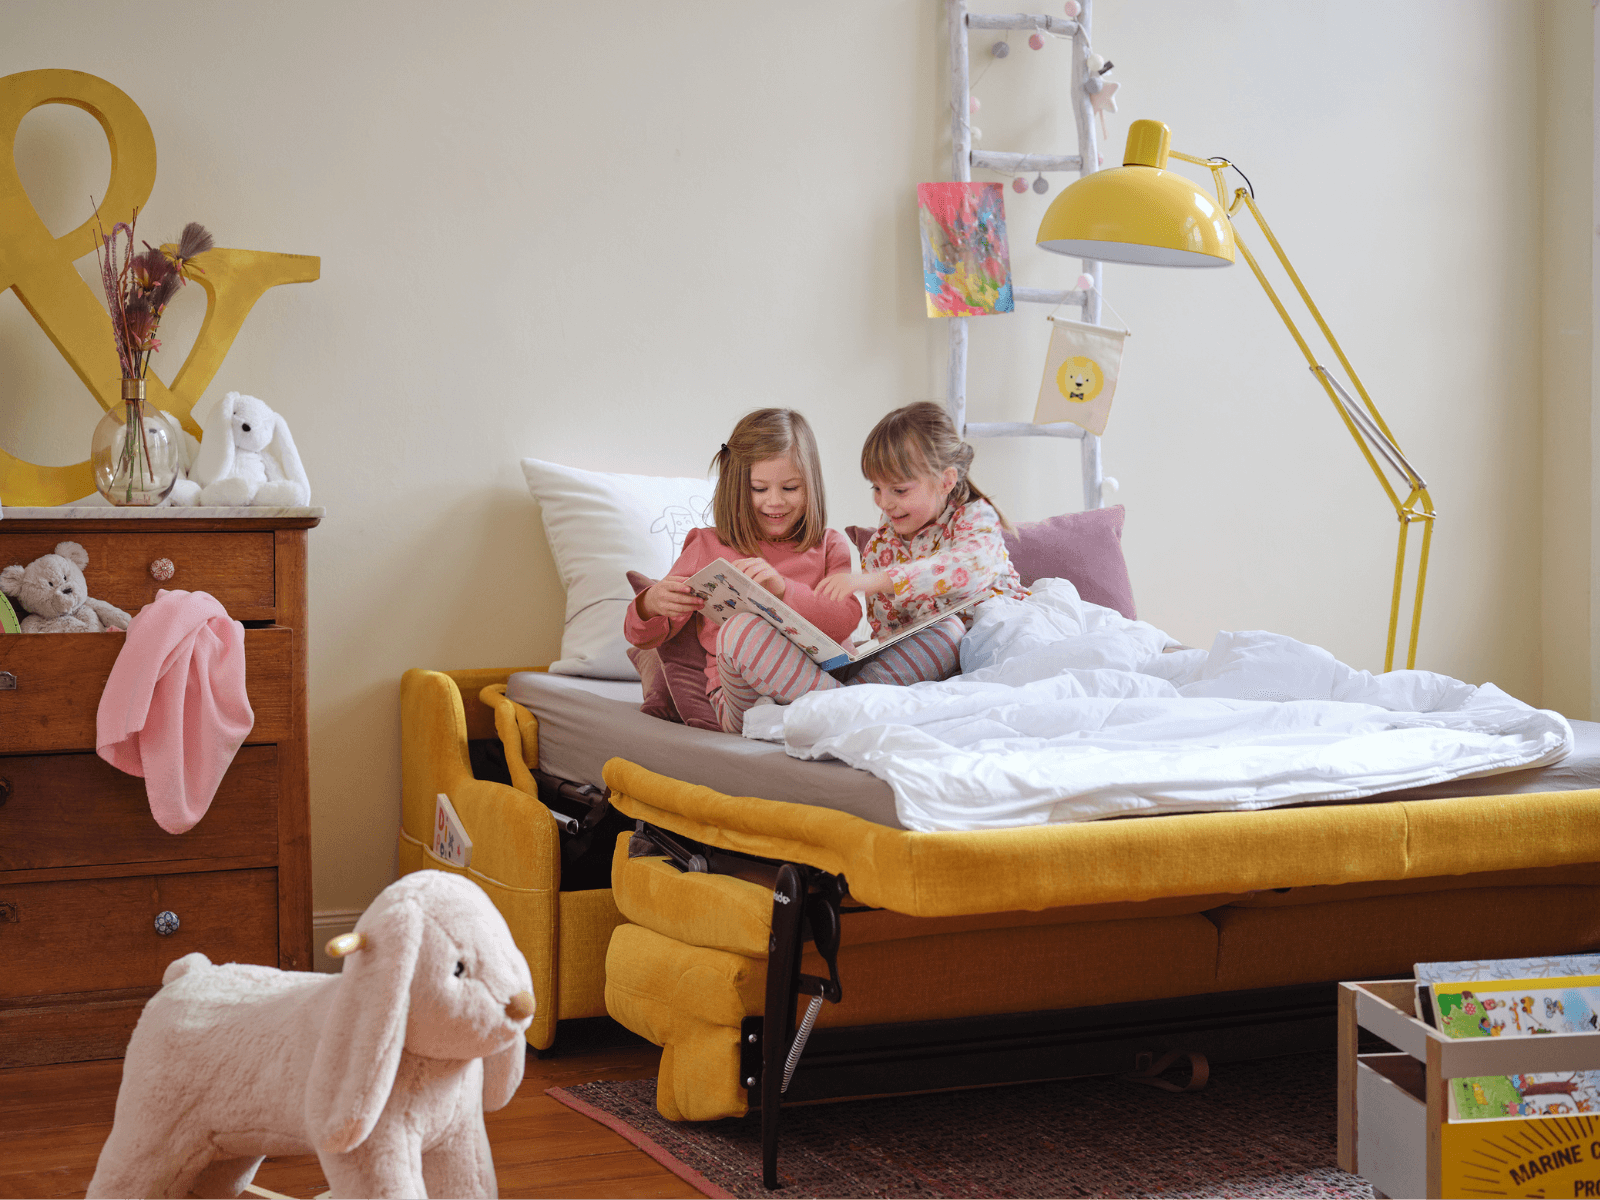 Kinder auf einem gelben geöffneten Schlafsofa am lesen